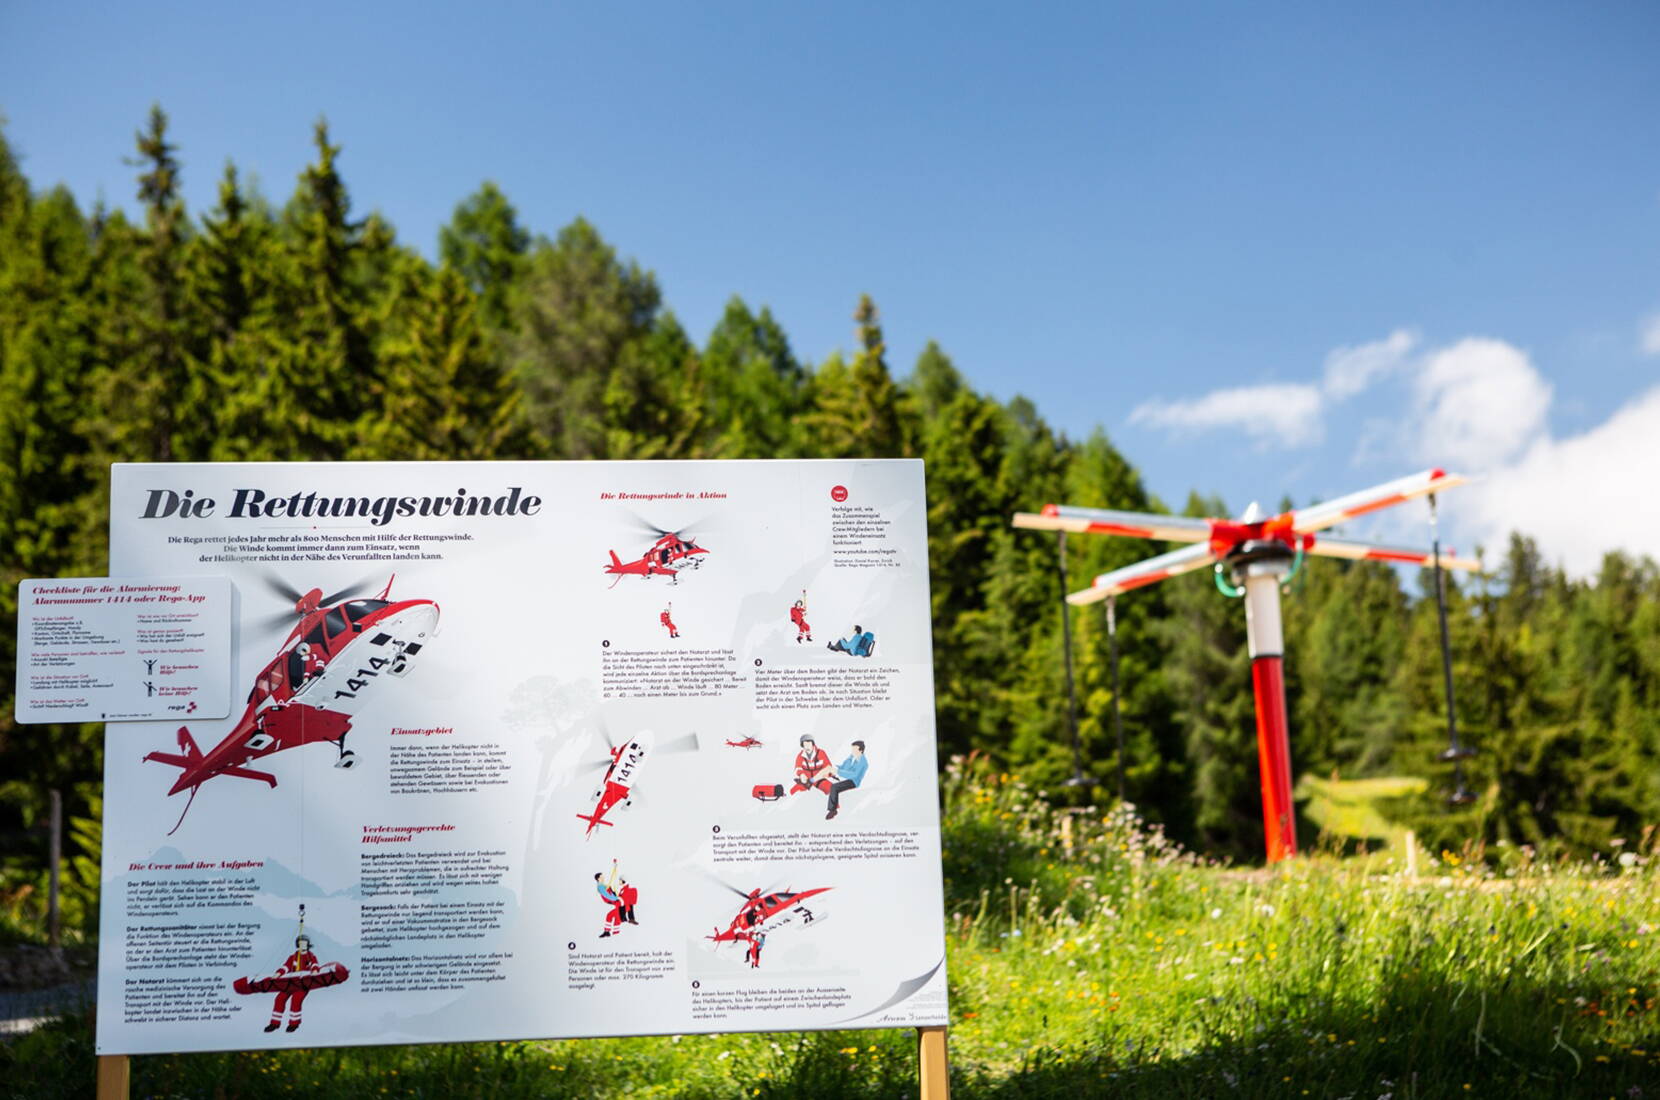 Gita in famiglia Sentiero escursionistico Globi – Sull'unico sentiero escursionistico Globi della Svizzera, Globi spiega in modo giocoso temi come la natura e la tecnologia in 13 postazioni.